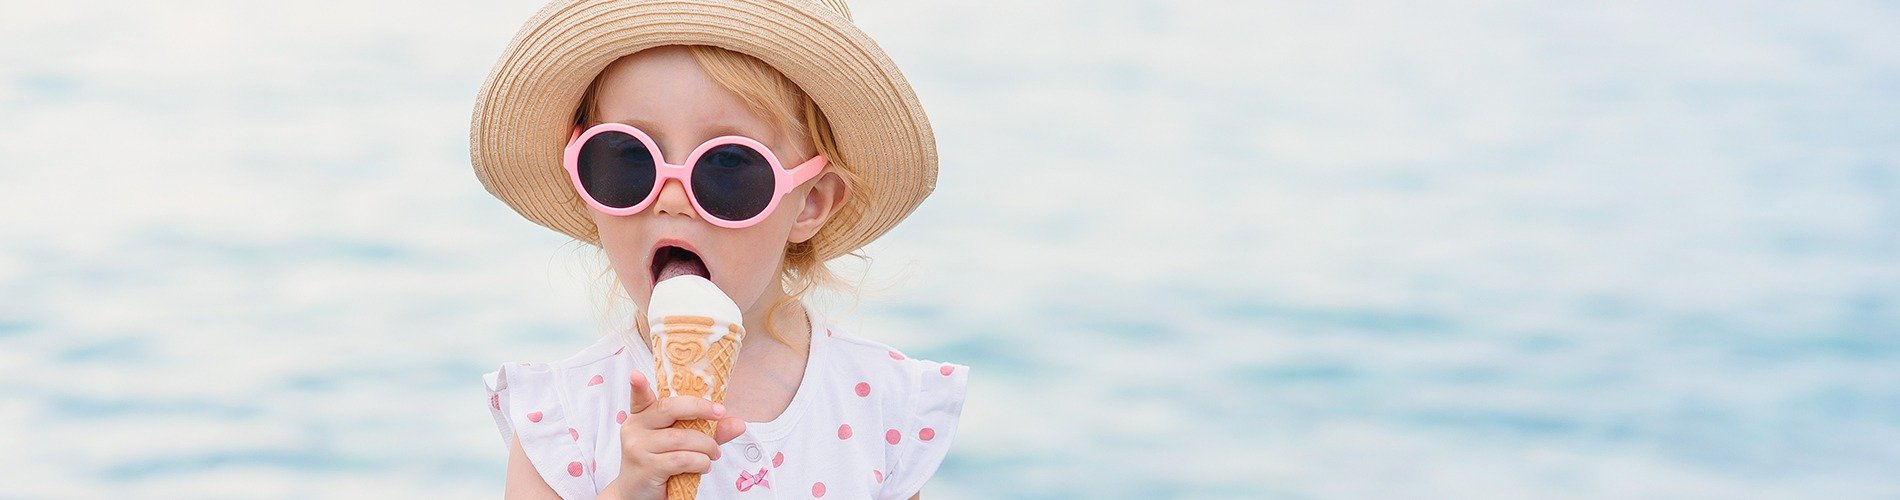 La salud dental de tus hijos en verano